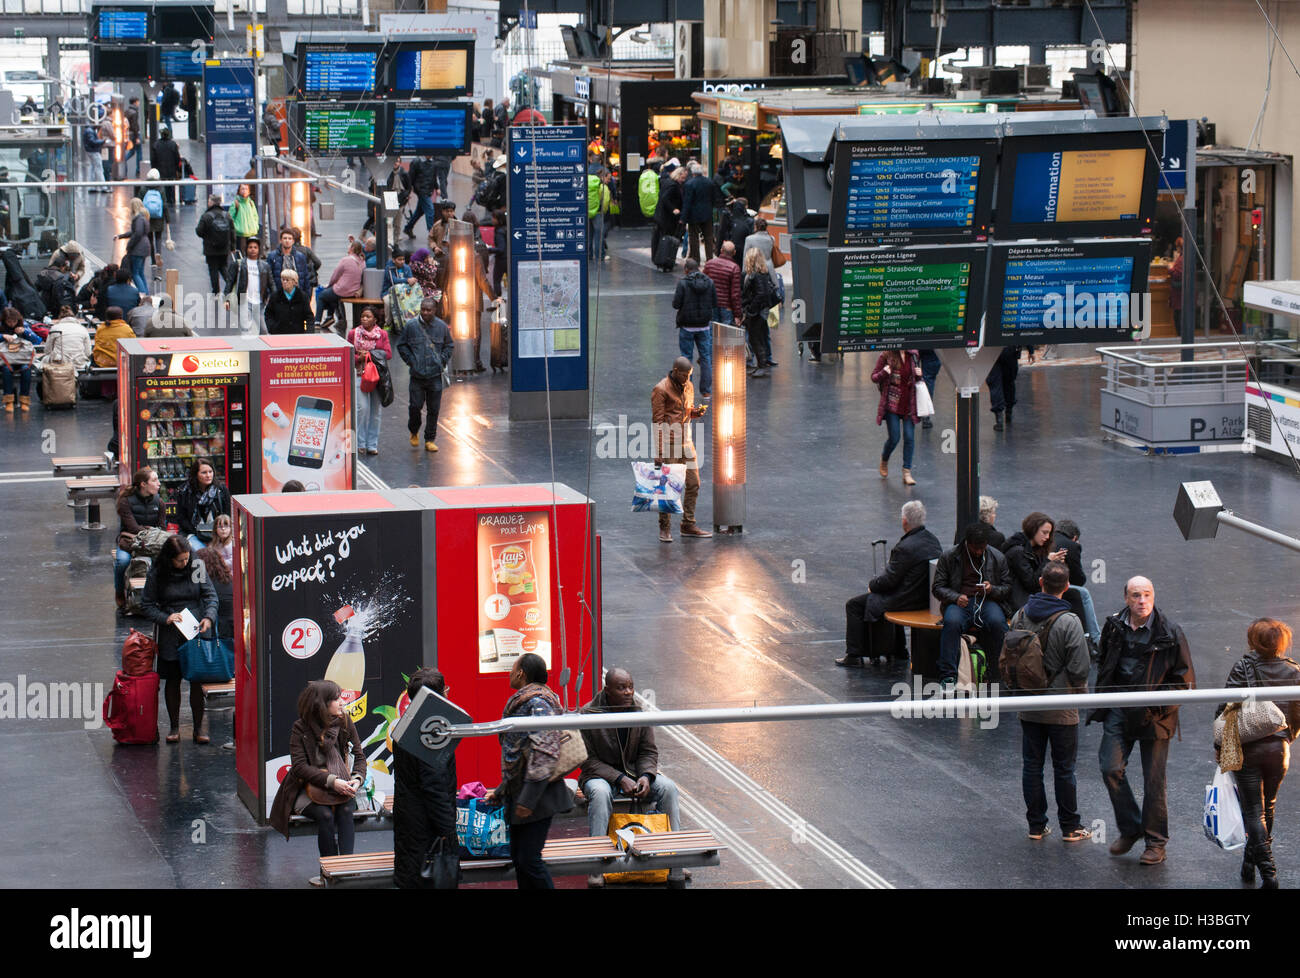 Bahnhofshalle am Bahnhof Gare de L'Est, Paris, Frankreich. Stockfoto